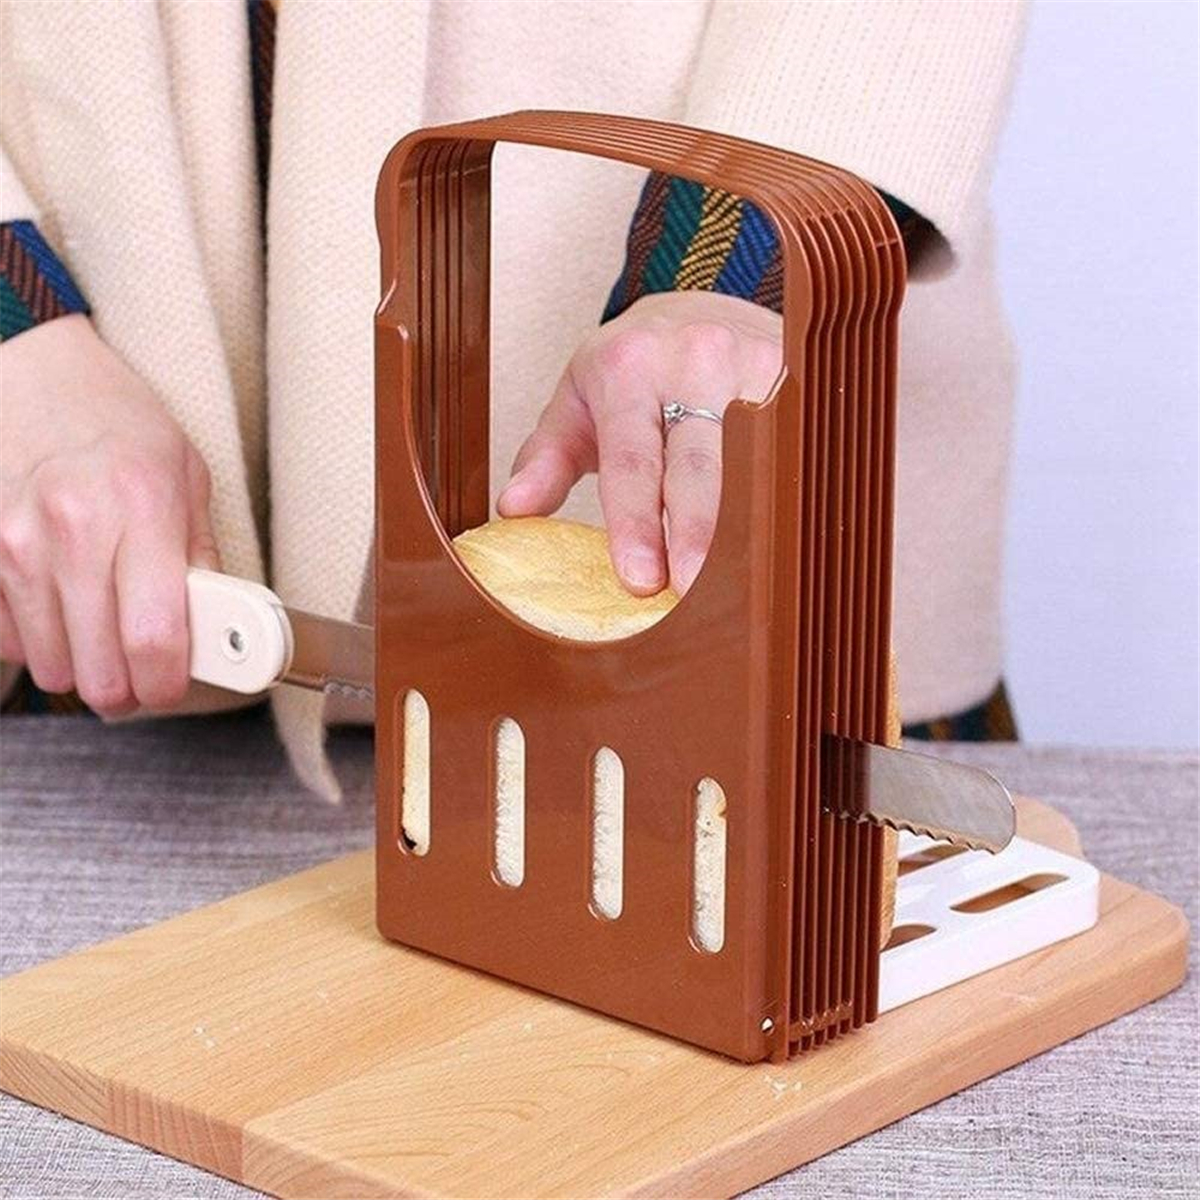 Practical-Kitchen-Bread-Loaf-Toast-Slicer-Cutter-Maker-Mold-Guide-Slicing-Tools-1695112-4